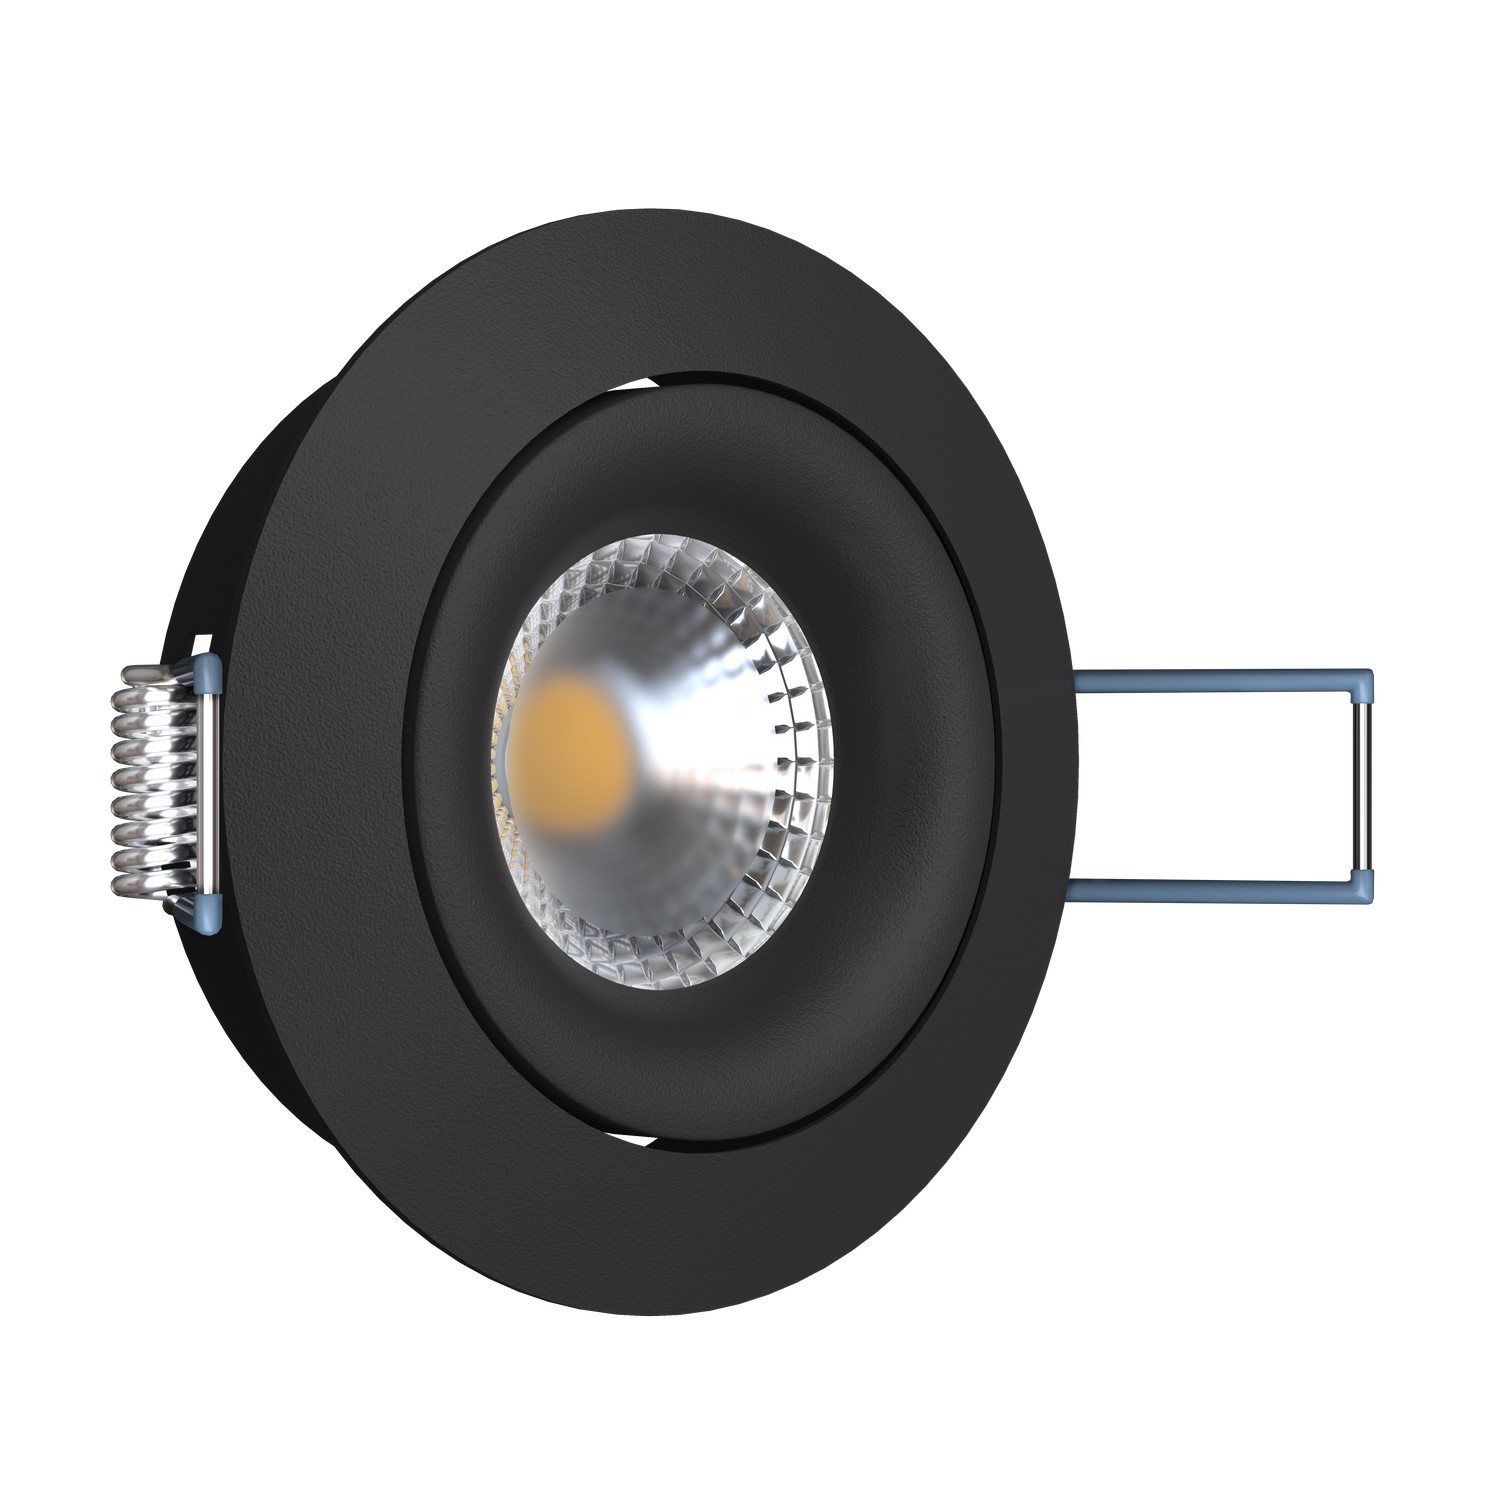 Светильник встраиваемый поворотный AO1501006 Black (круглый)           Ledron